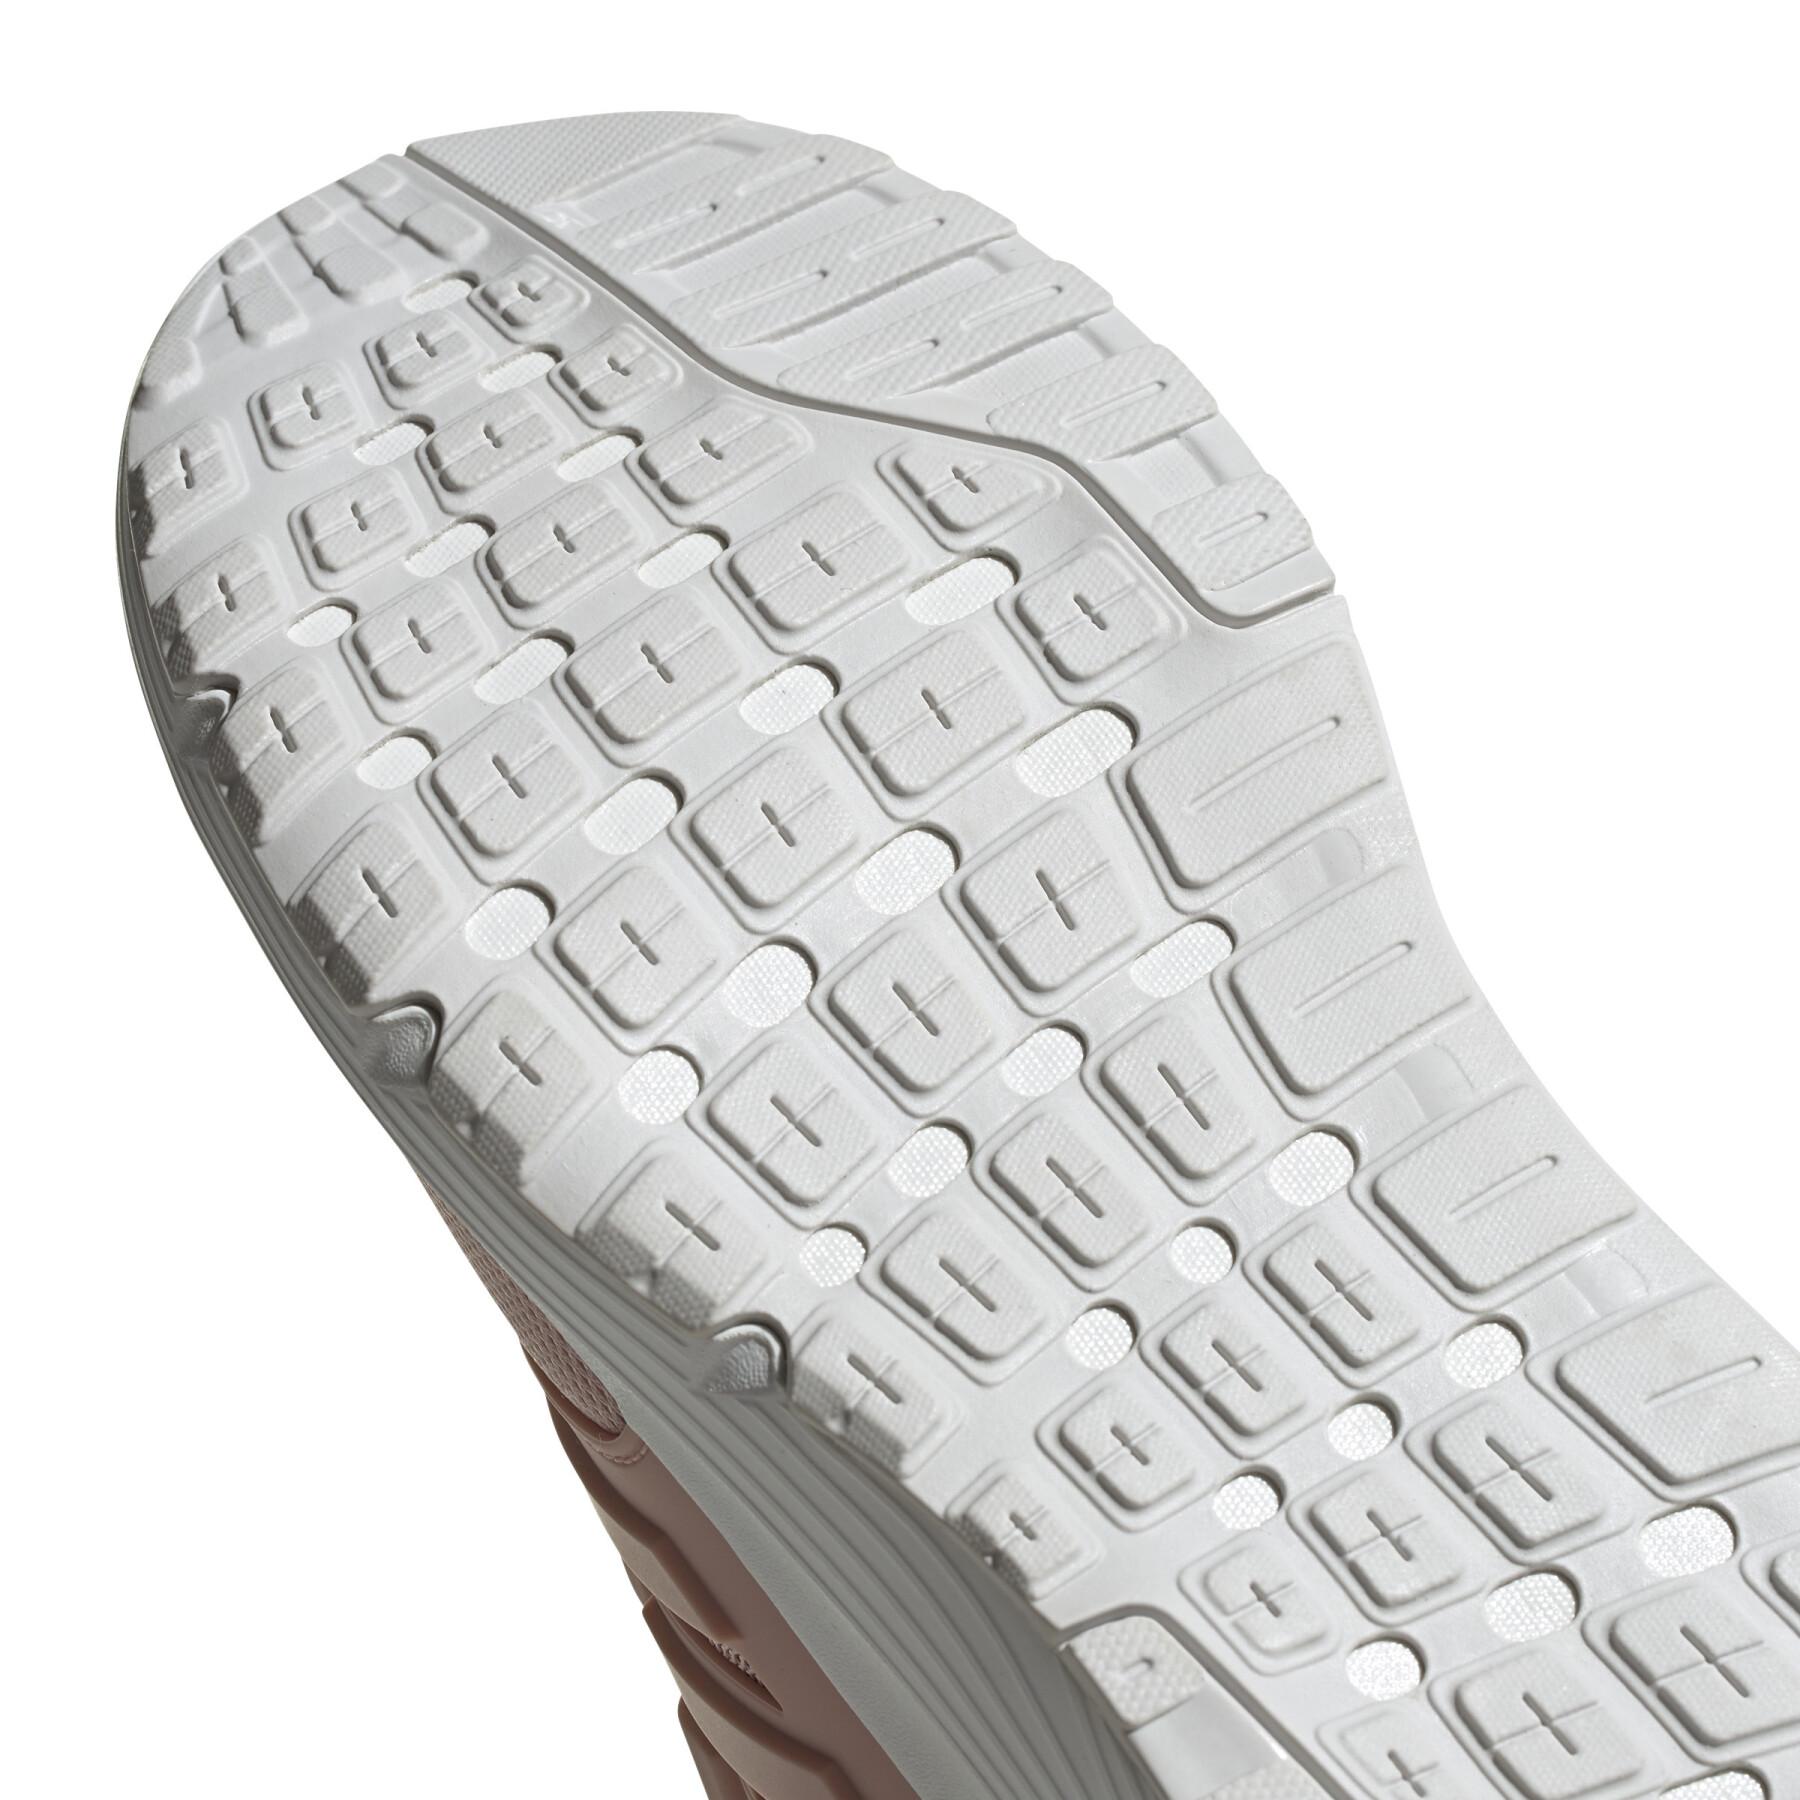 Chaussures de running femme adidas Galaxy 4